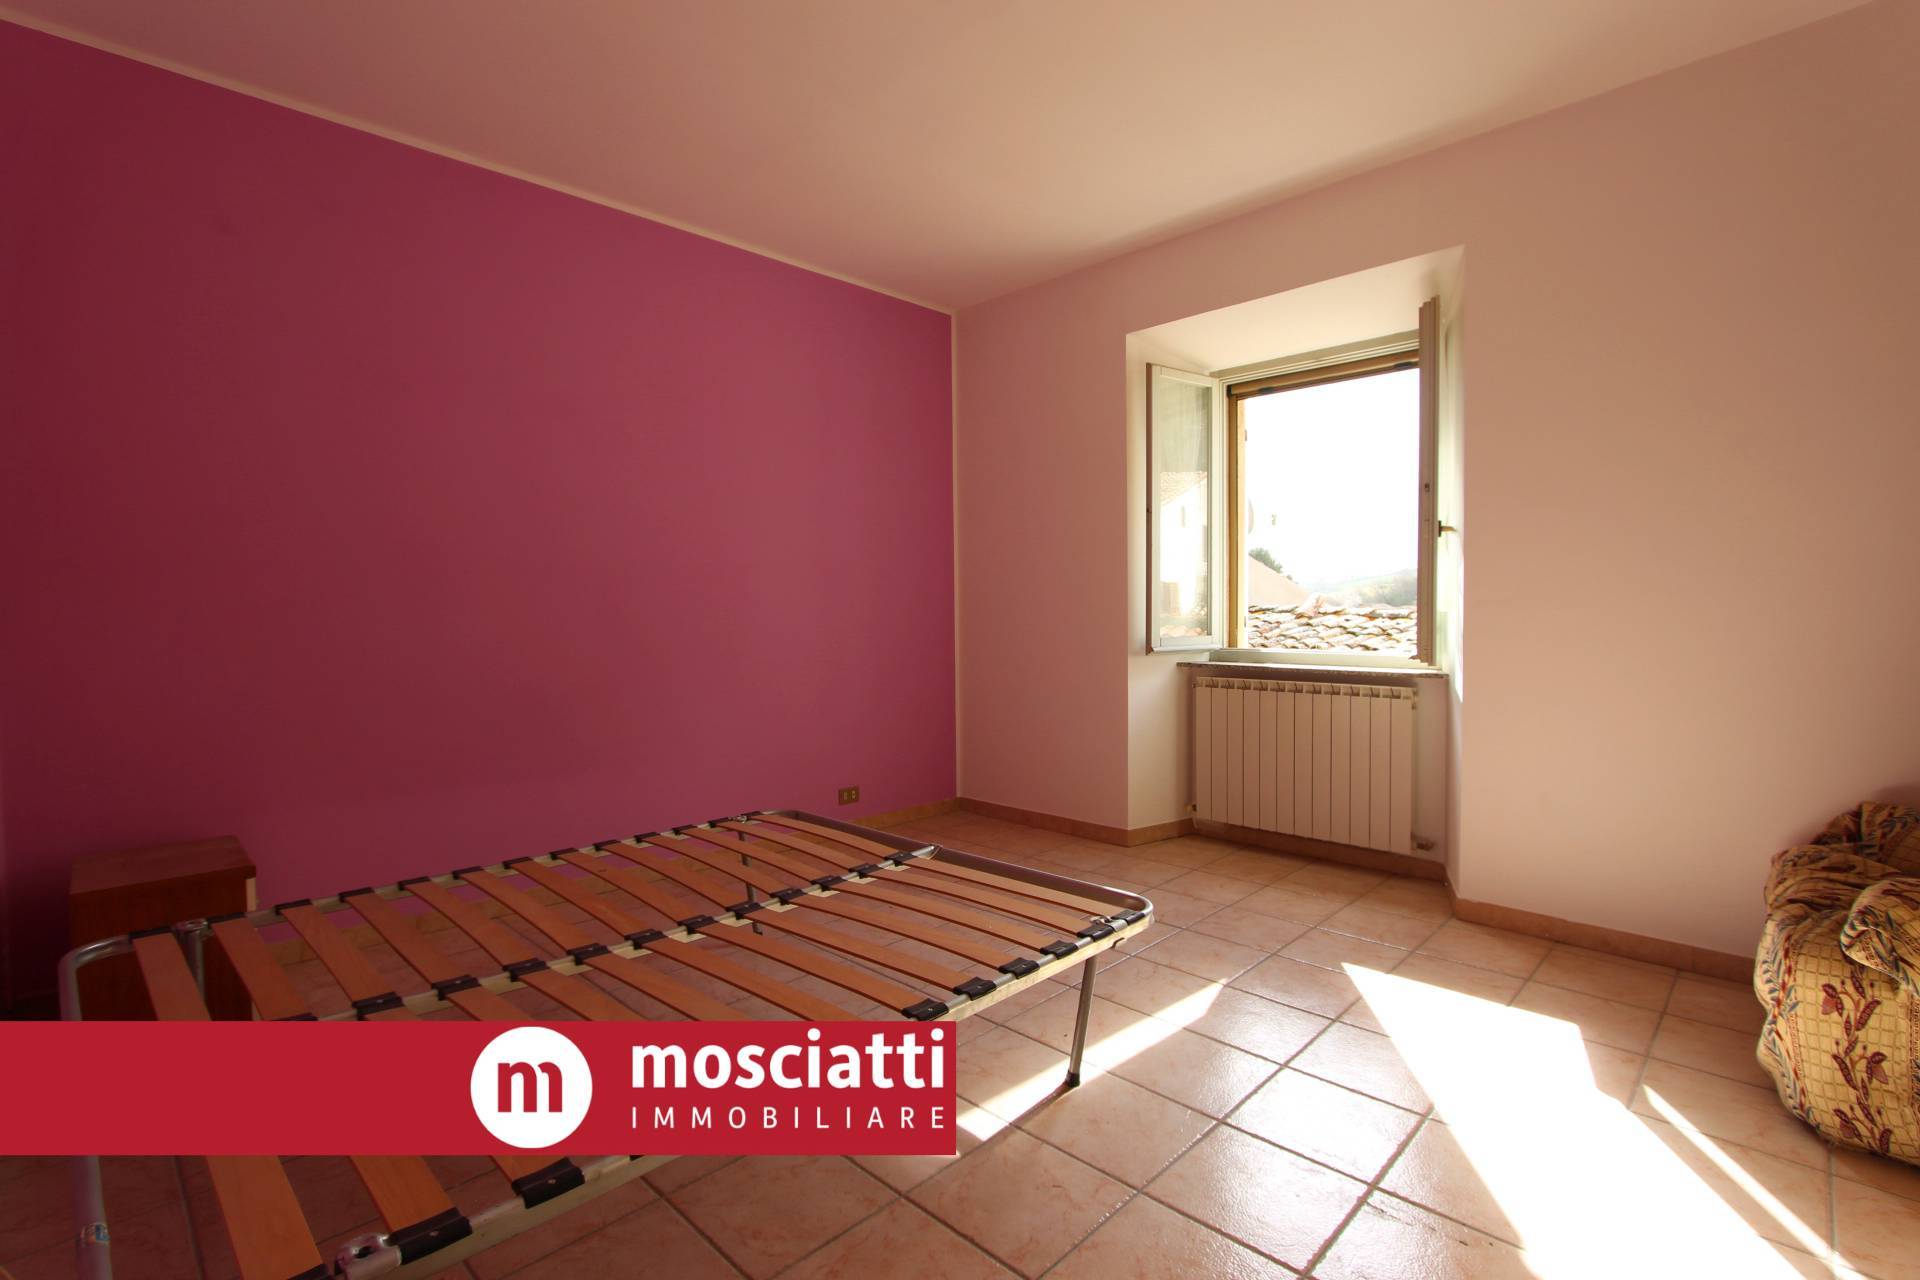 Appartamento in vendita a Esanatoglia, 1 locali, prezzo € 20.000 | PortaleAgenzieImmobiliari.it